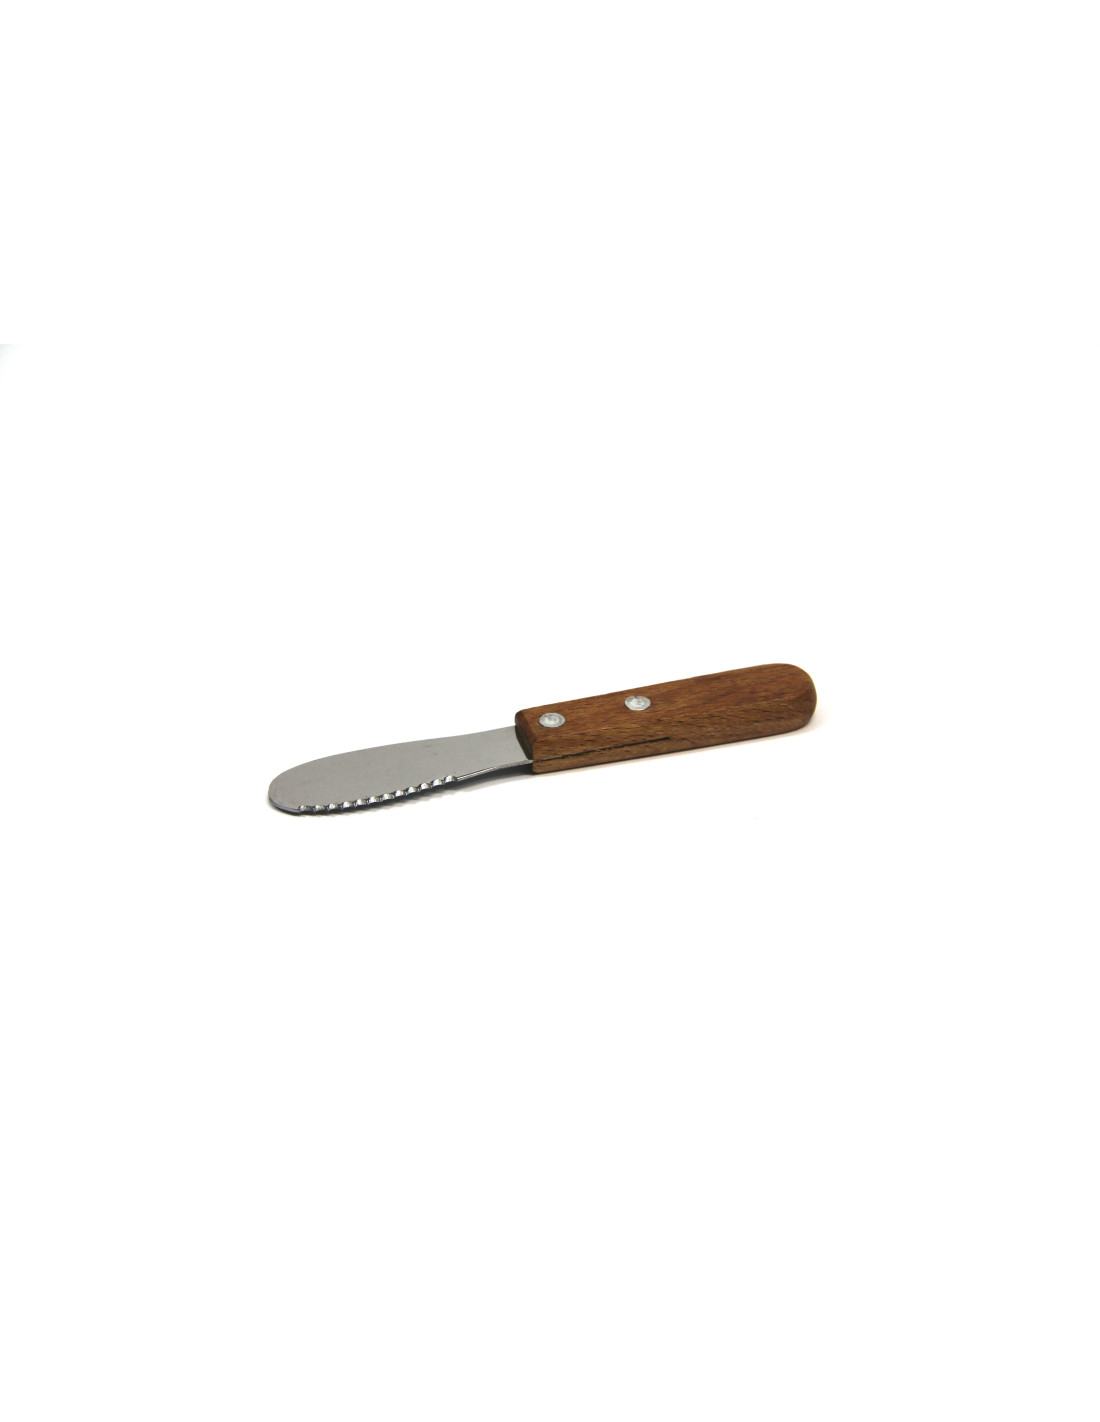 Couteau en bois sûr pour les enfants, couteau Montessori pour